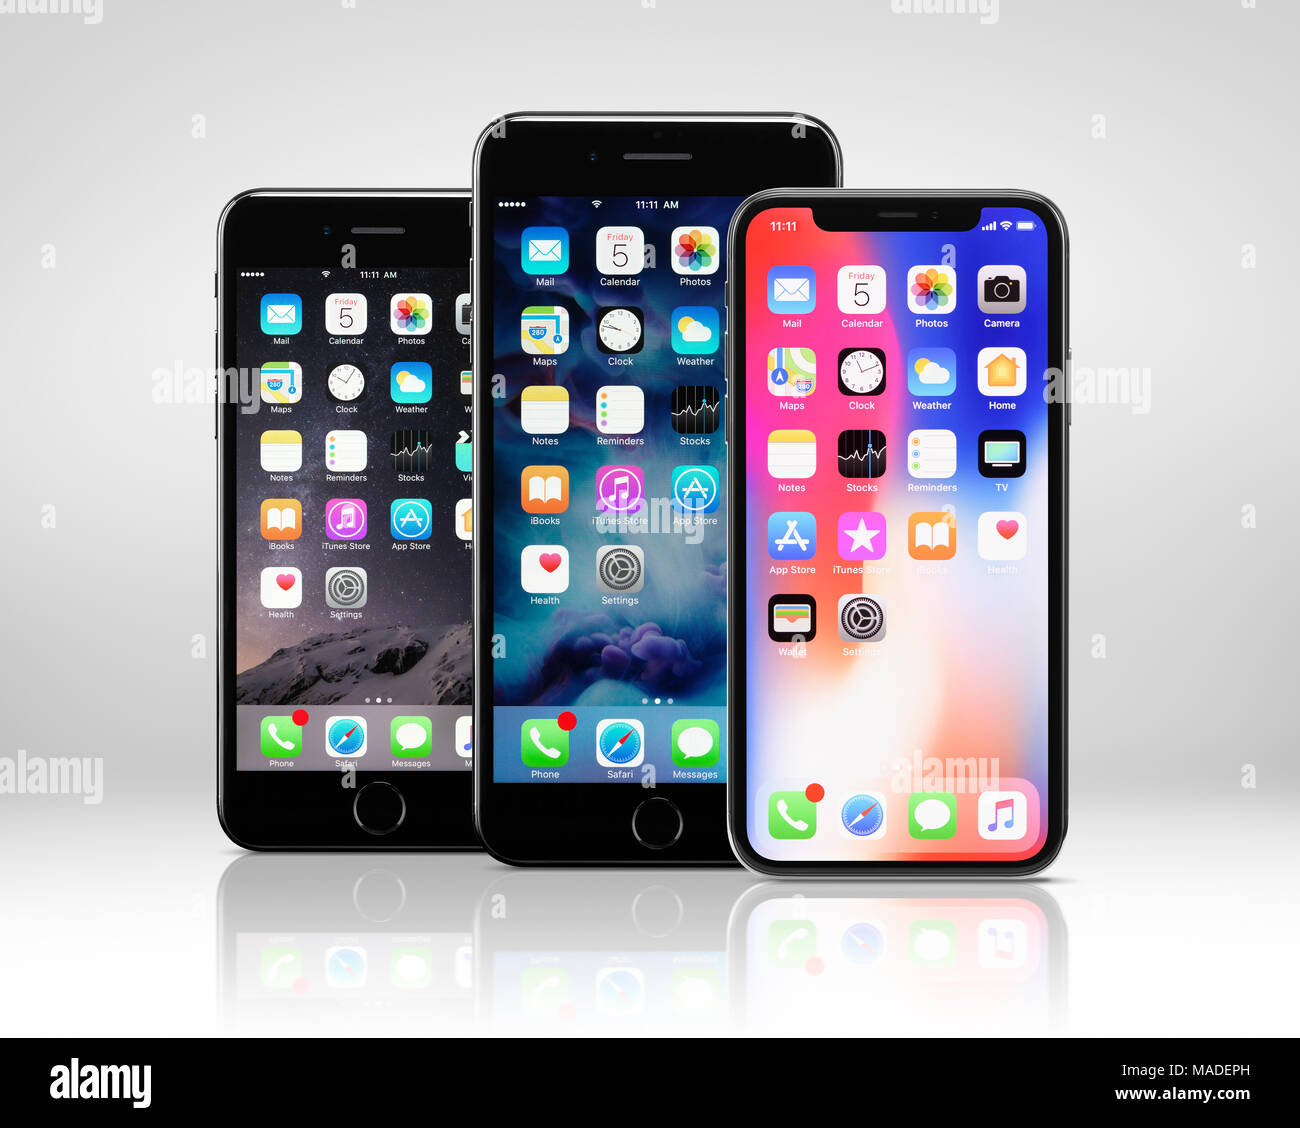 Apple iPhone X a la derecha, una gran pantalla de smartphone, y similar al iPhone 8 y 8 plus, iPhone 7 - izquierda, iPhone 7 Plus phablet en oriente, tres modos Foto de stock